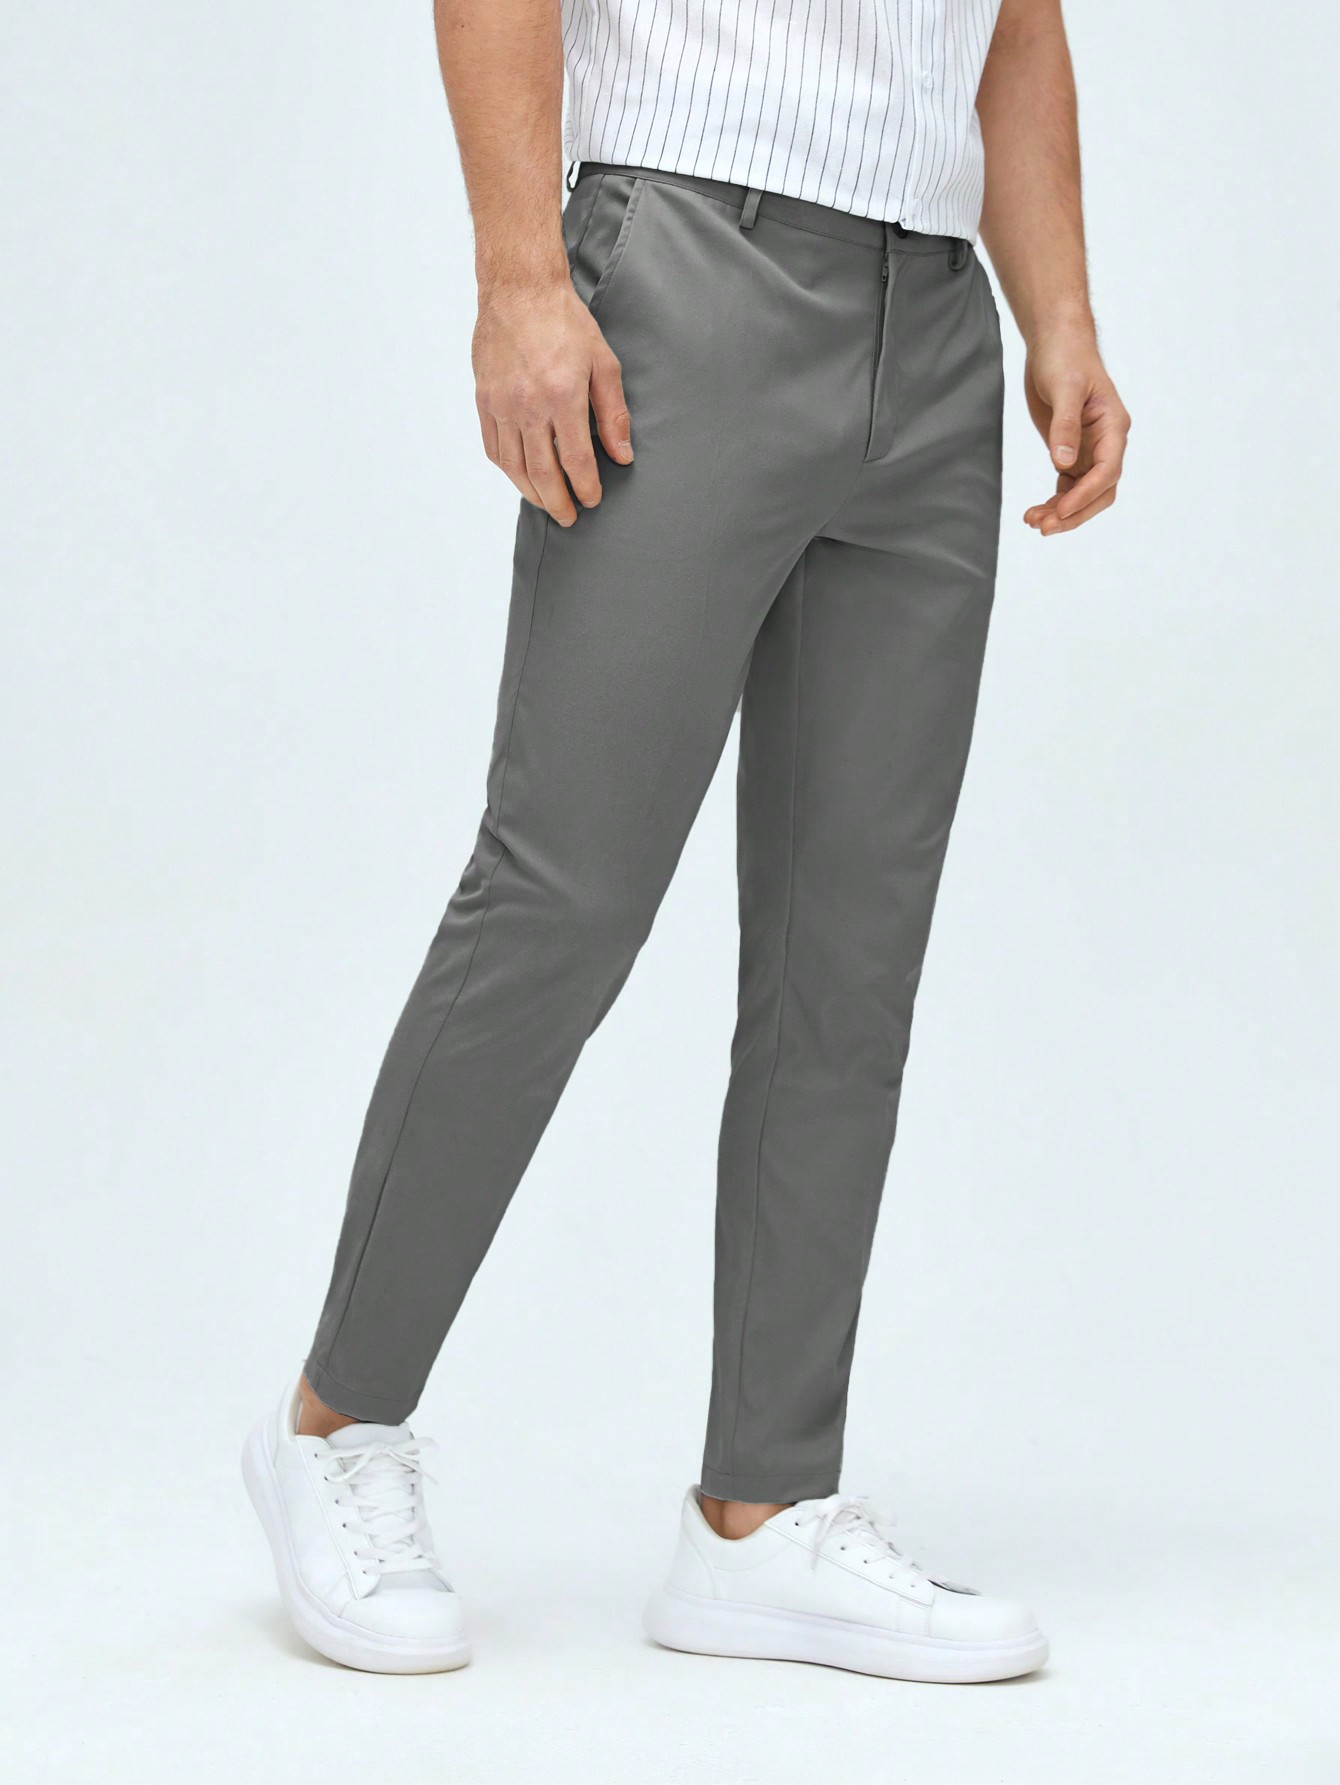 Мужские классические классические брюки из тканого материала с боковыми карманами Manfinity Mode, темно-серый